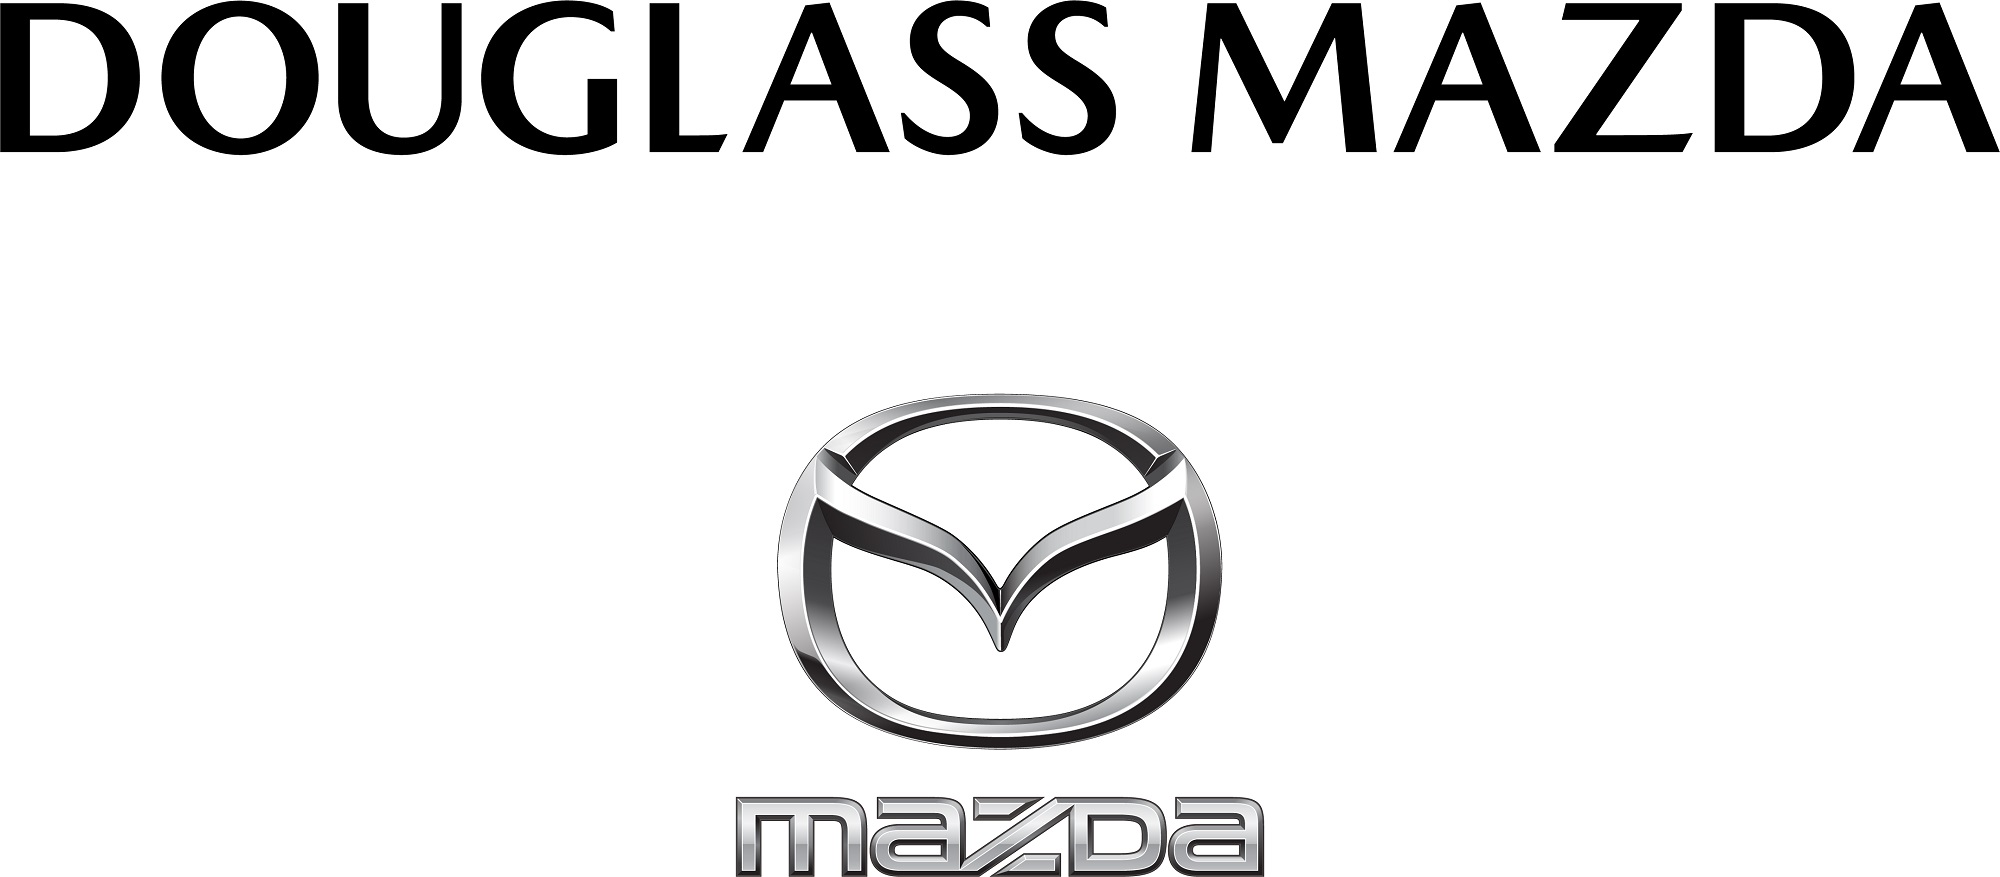 Douglass Mazda